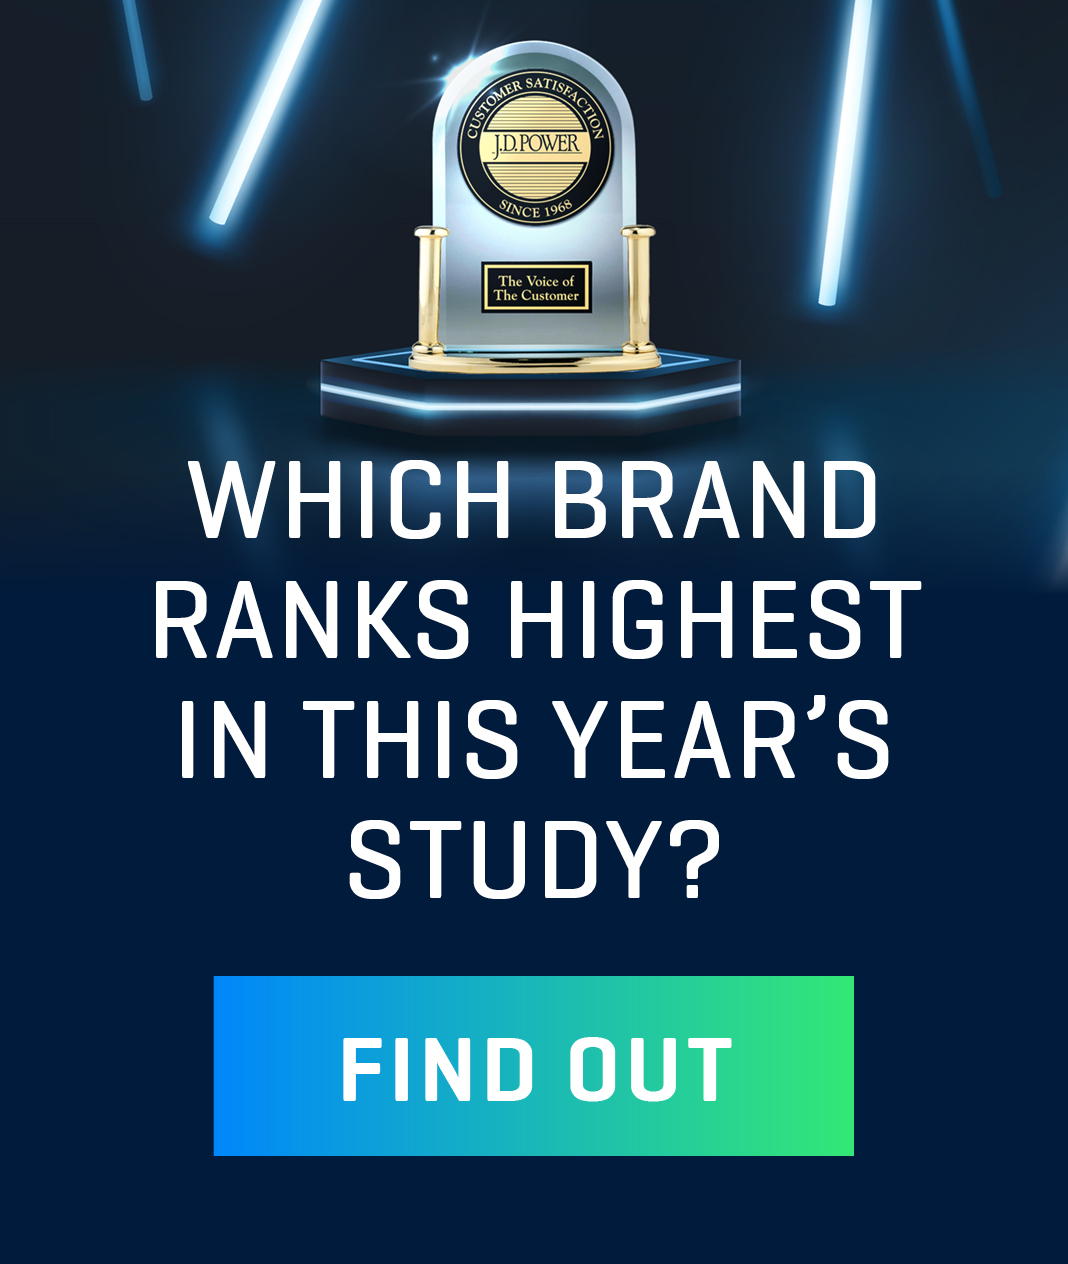 Which brand ranks highest?